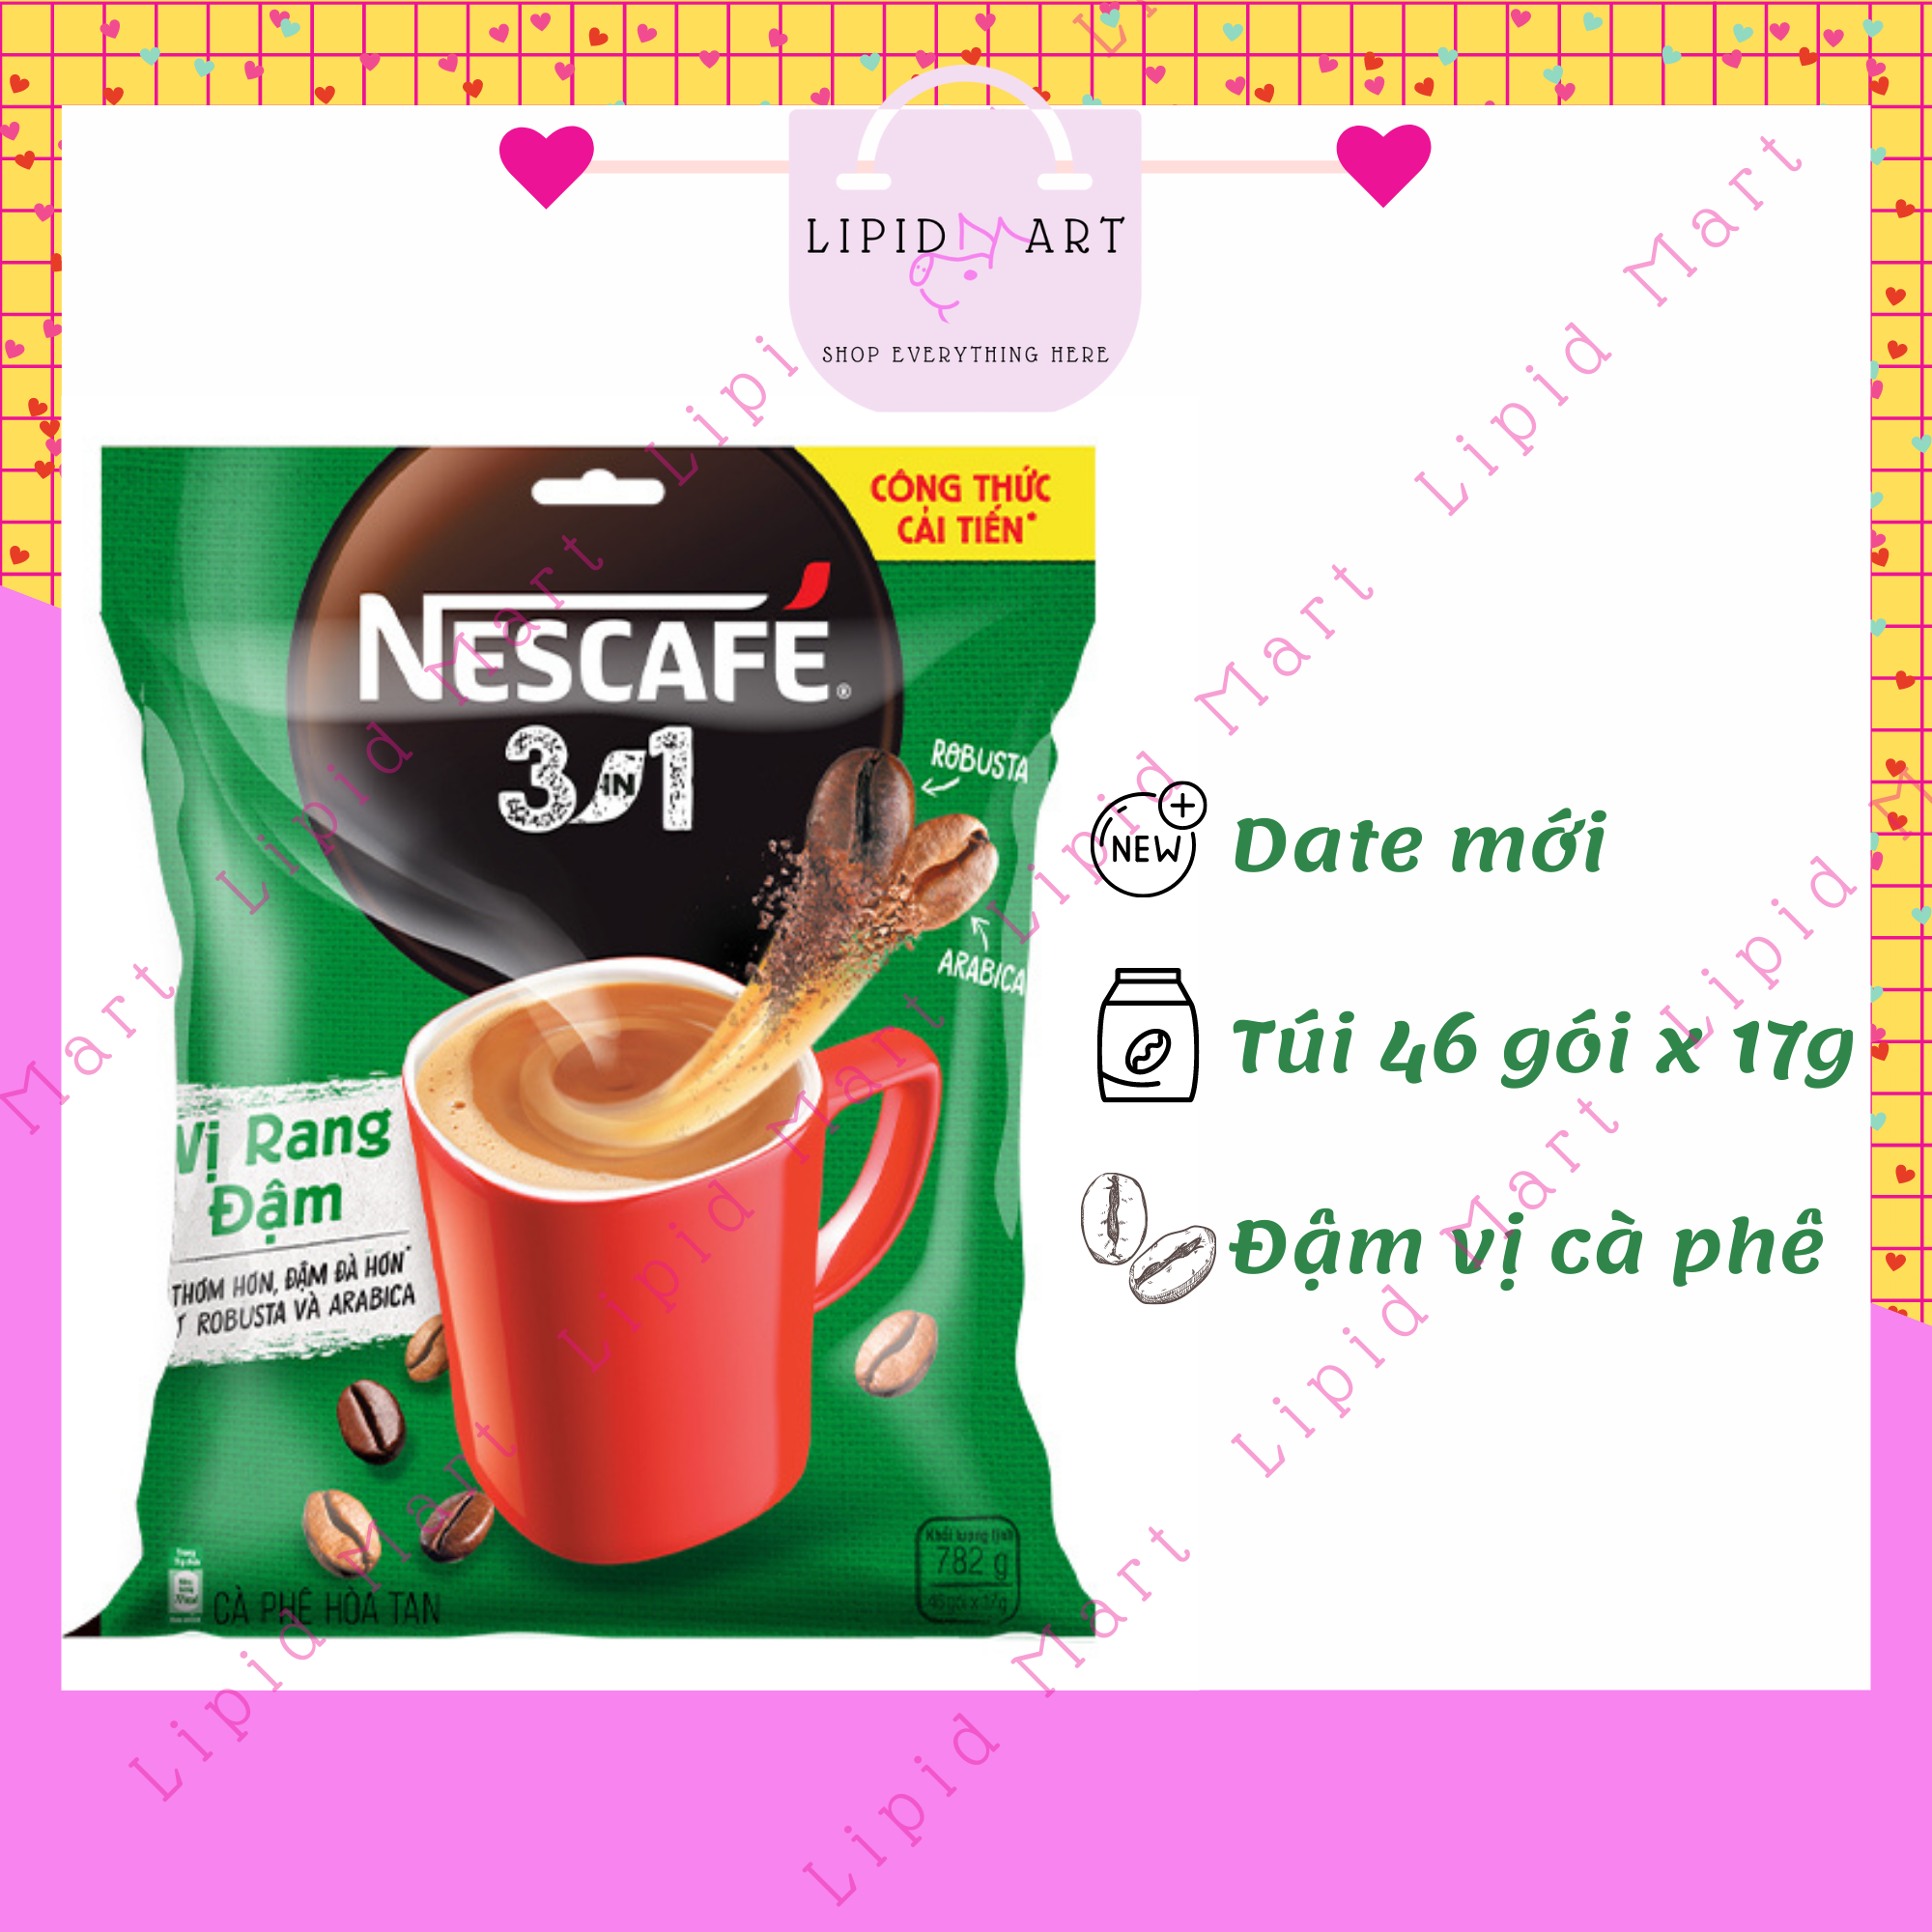 Cafe Hòa Tan NESCAFÉ 3 in1 Vị Rang Đậm Bịch 46 gói x 17g xanh